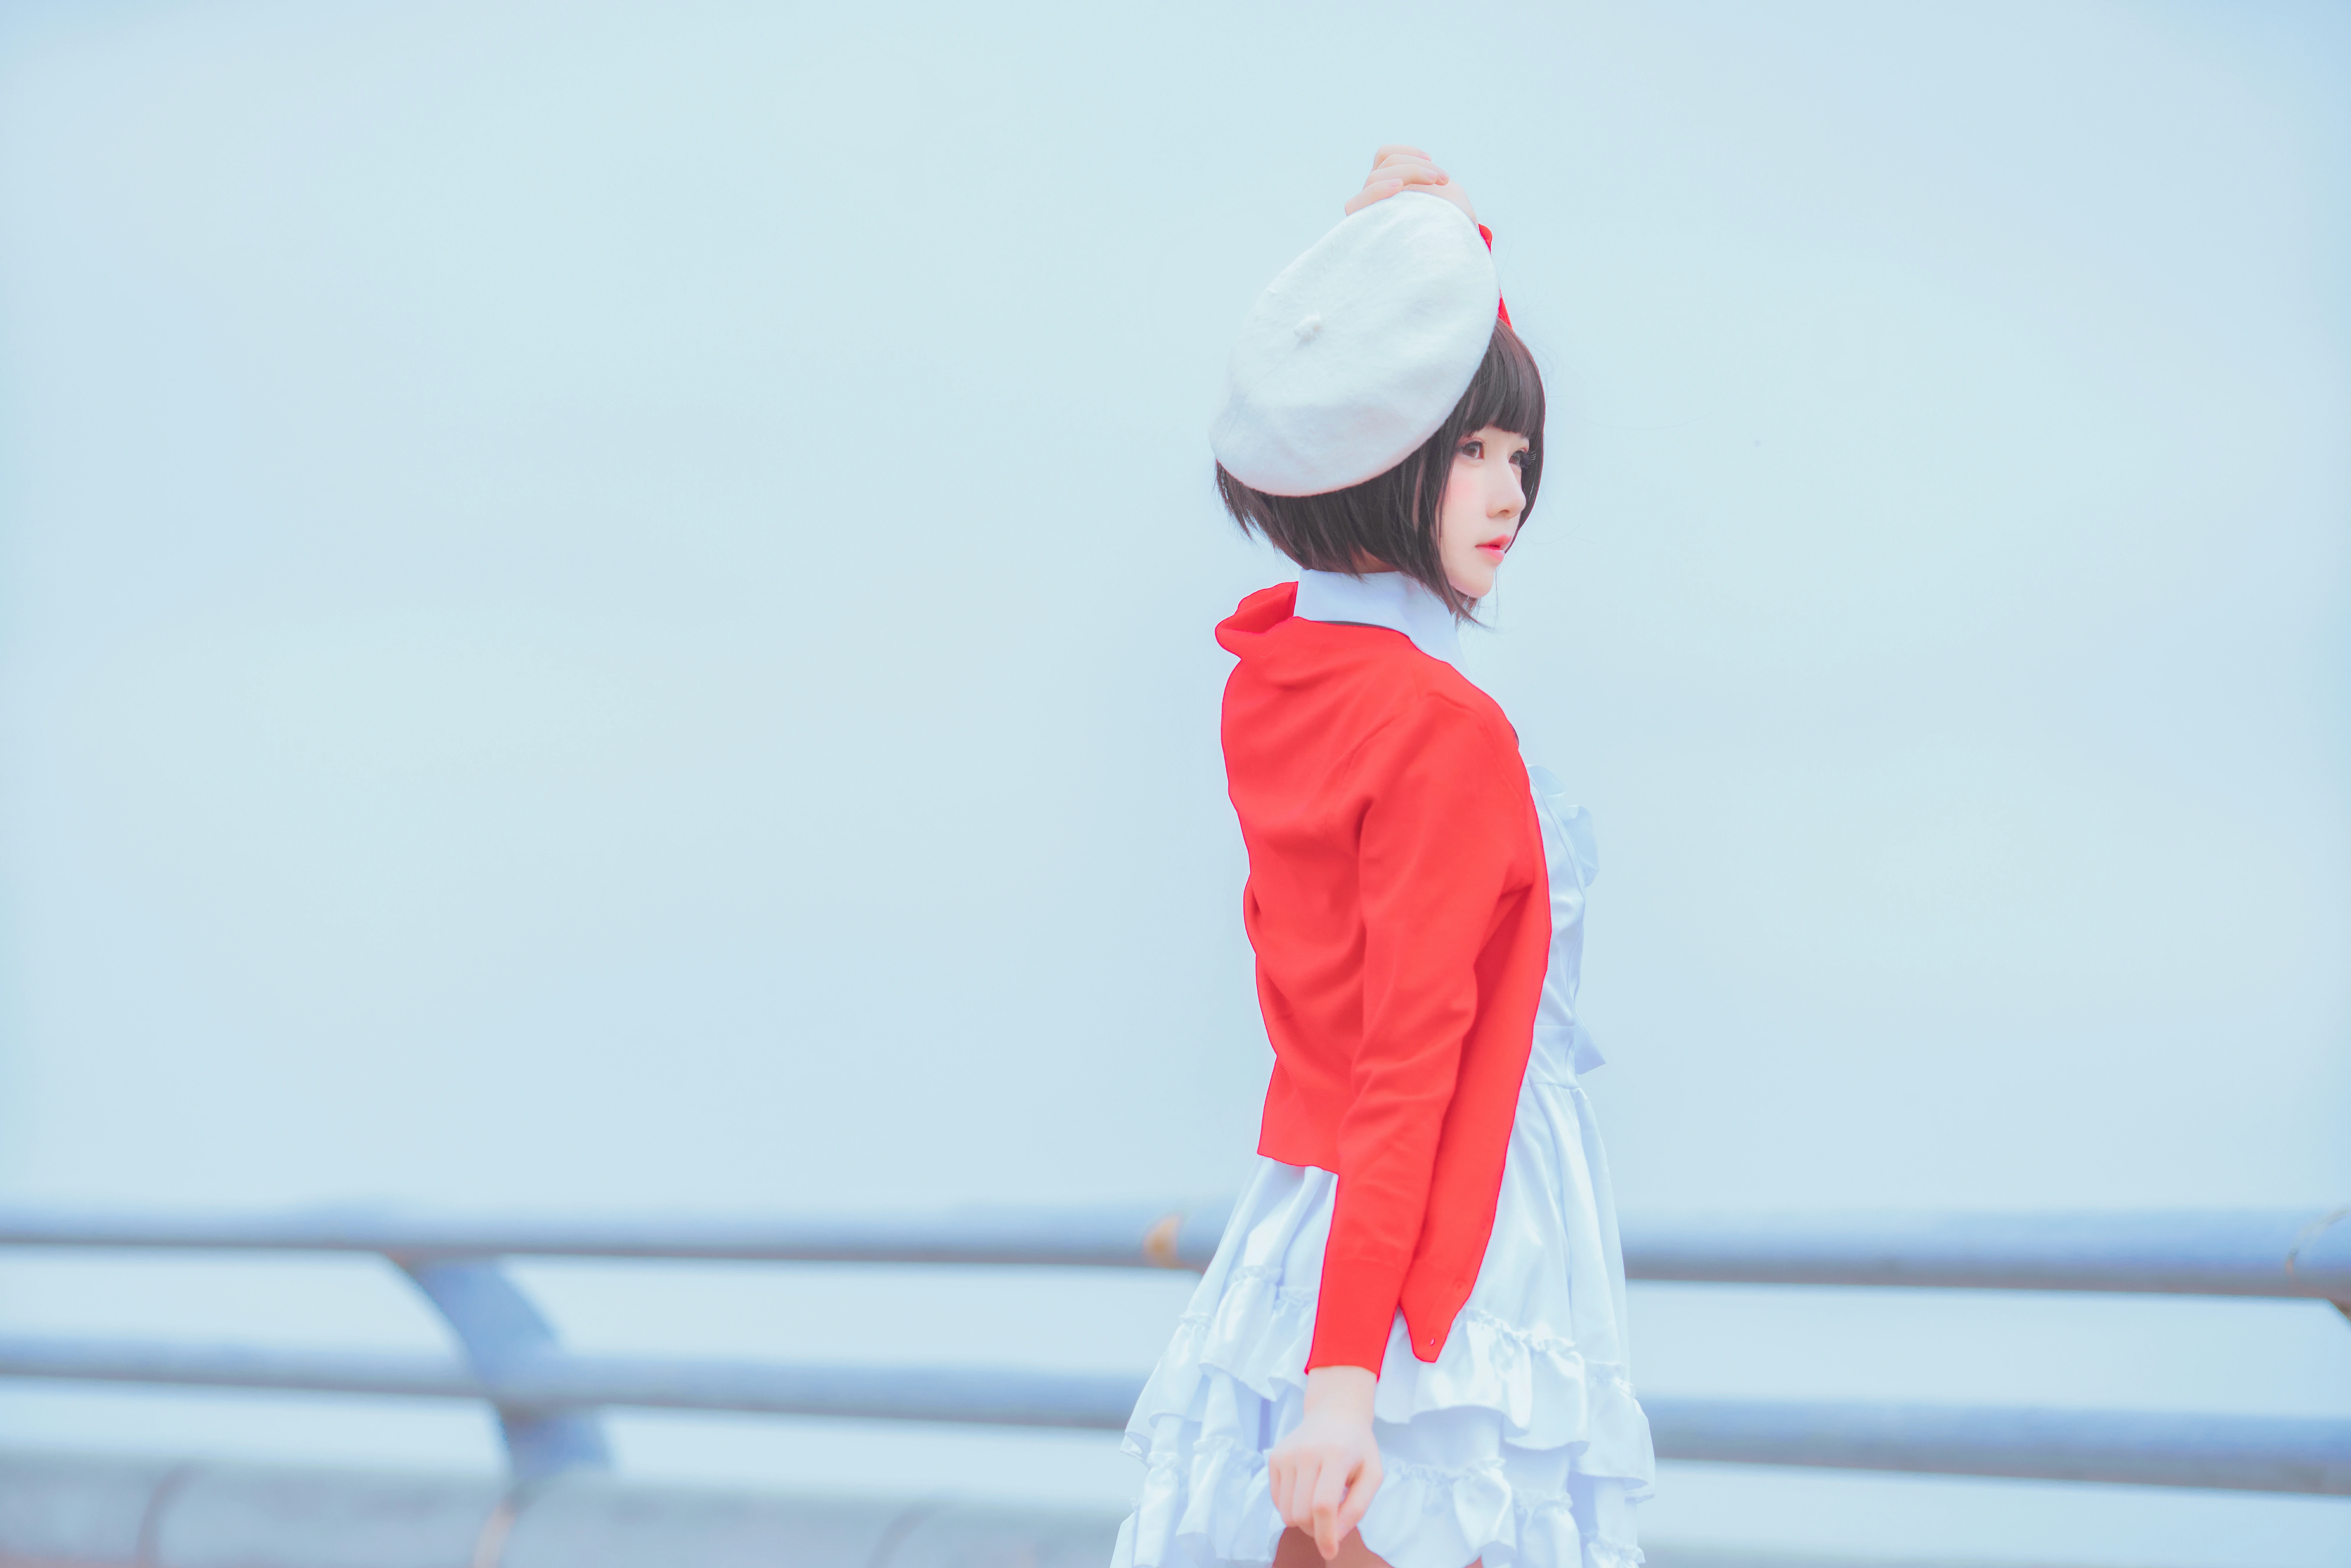 清纯少女 桜桃喵 红色外套与白色连衣裙加白色丝袜美腿街拍写真,0018